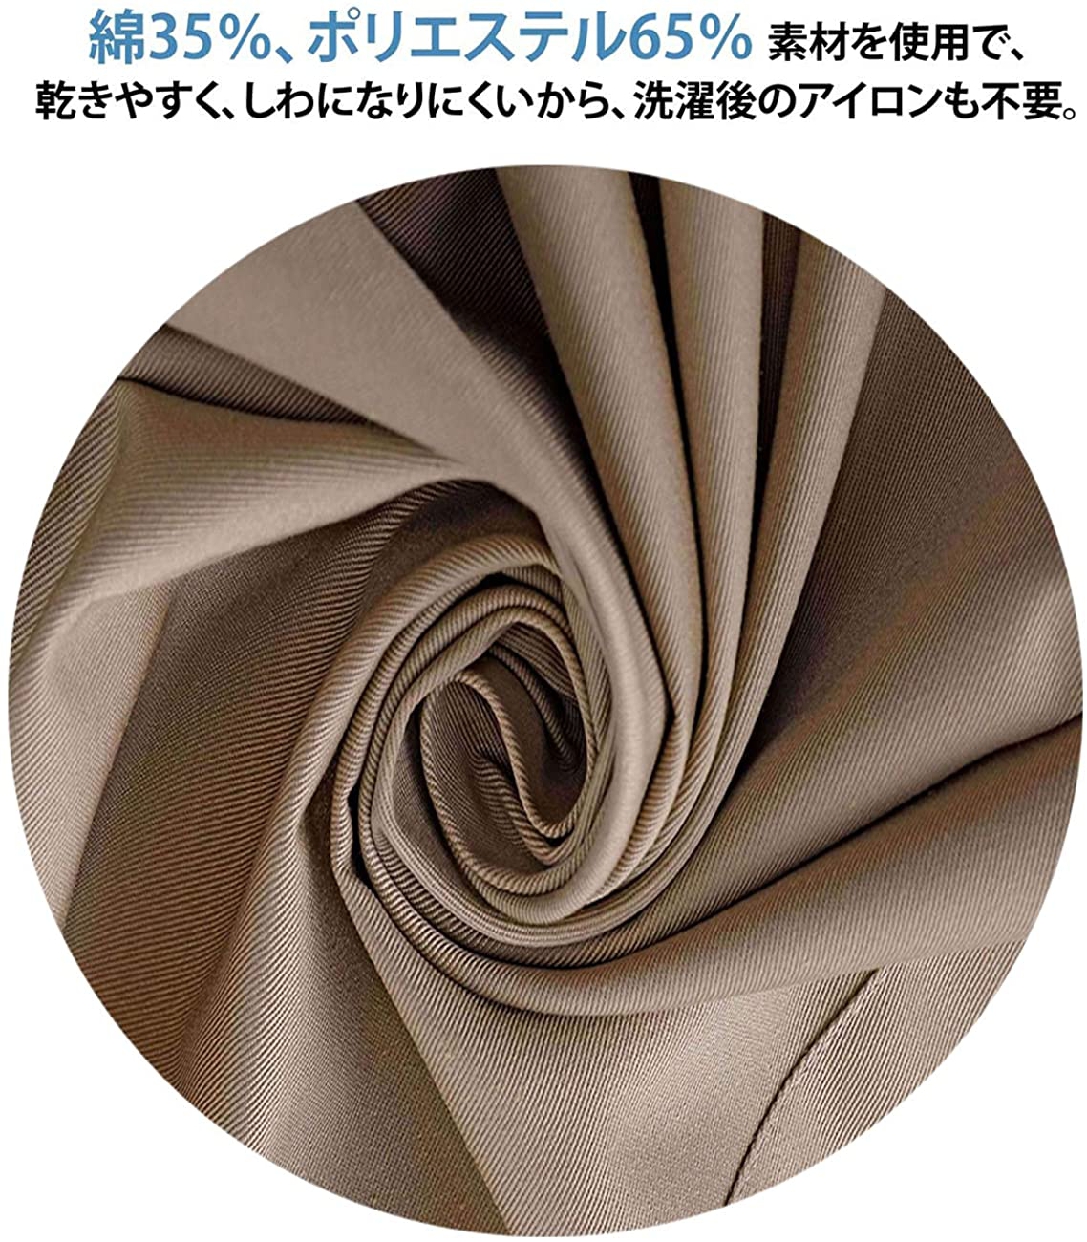 WOOMOON花月(WOOMOON) 三角巾の商品画像3 